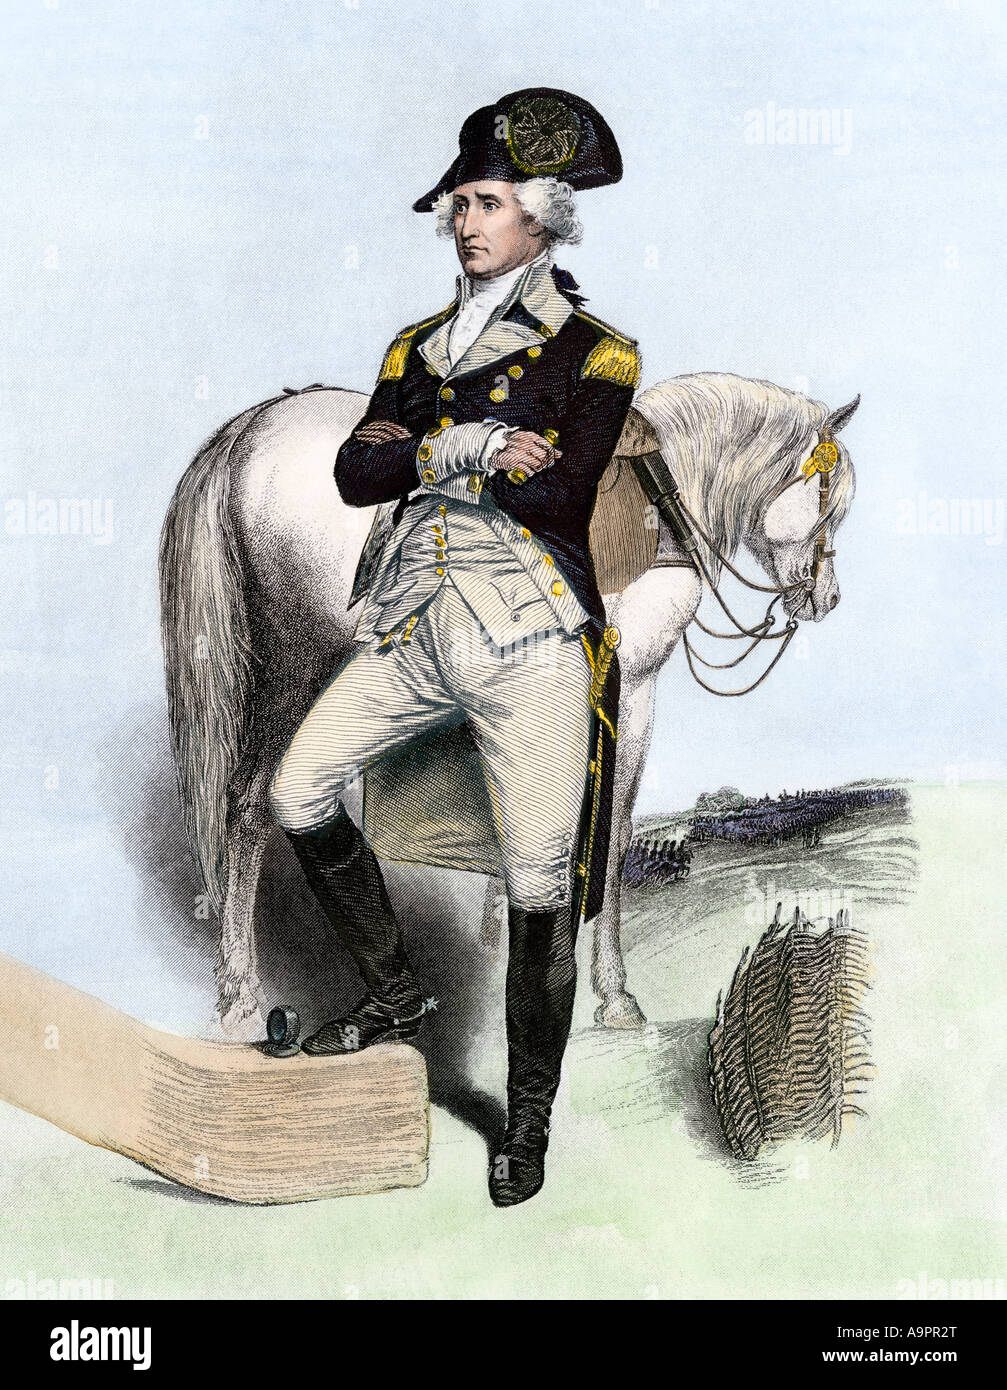 George Washington nach dem übernehmen das Kommando über die Armee 1775. Handcolorierte Stahlstich Stockfoto